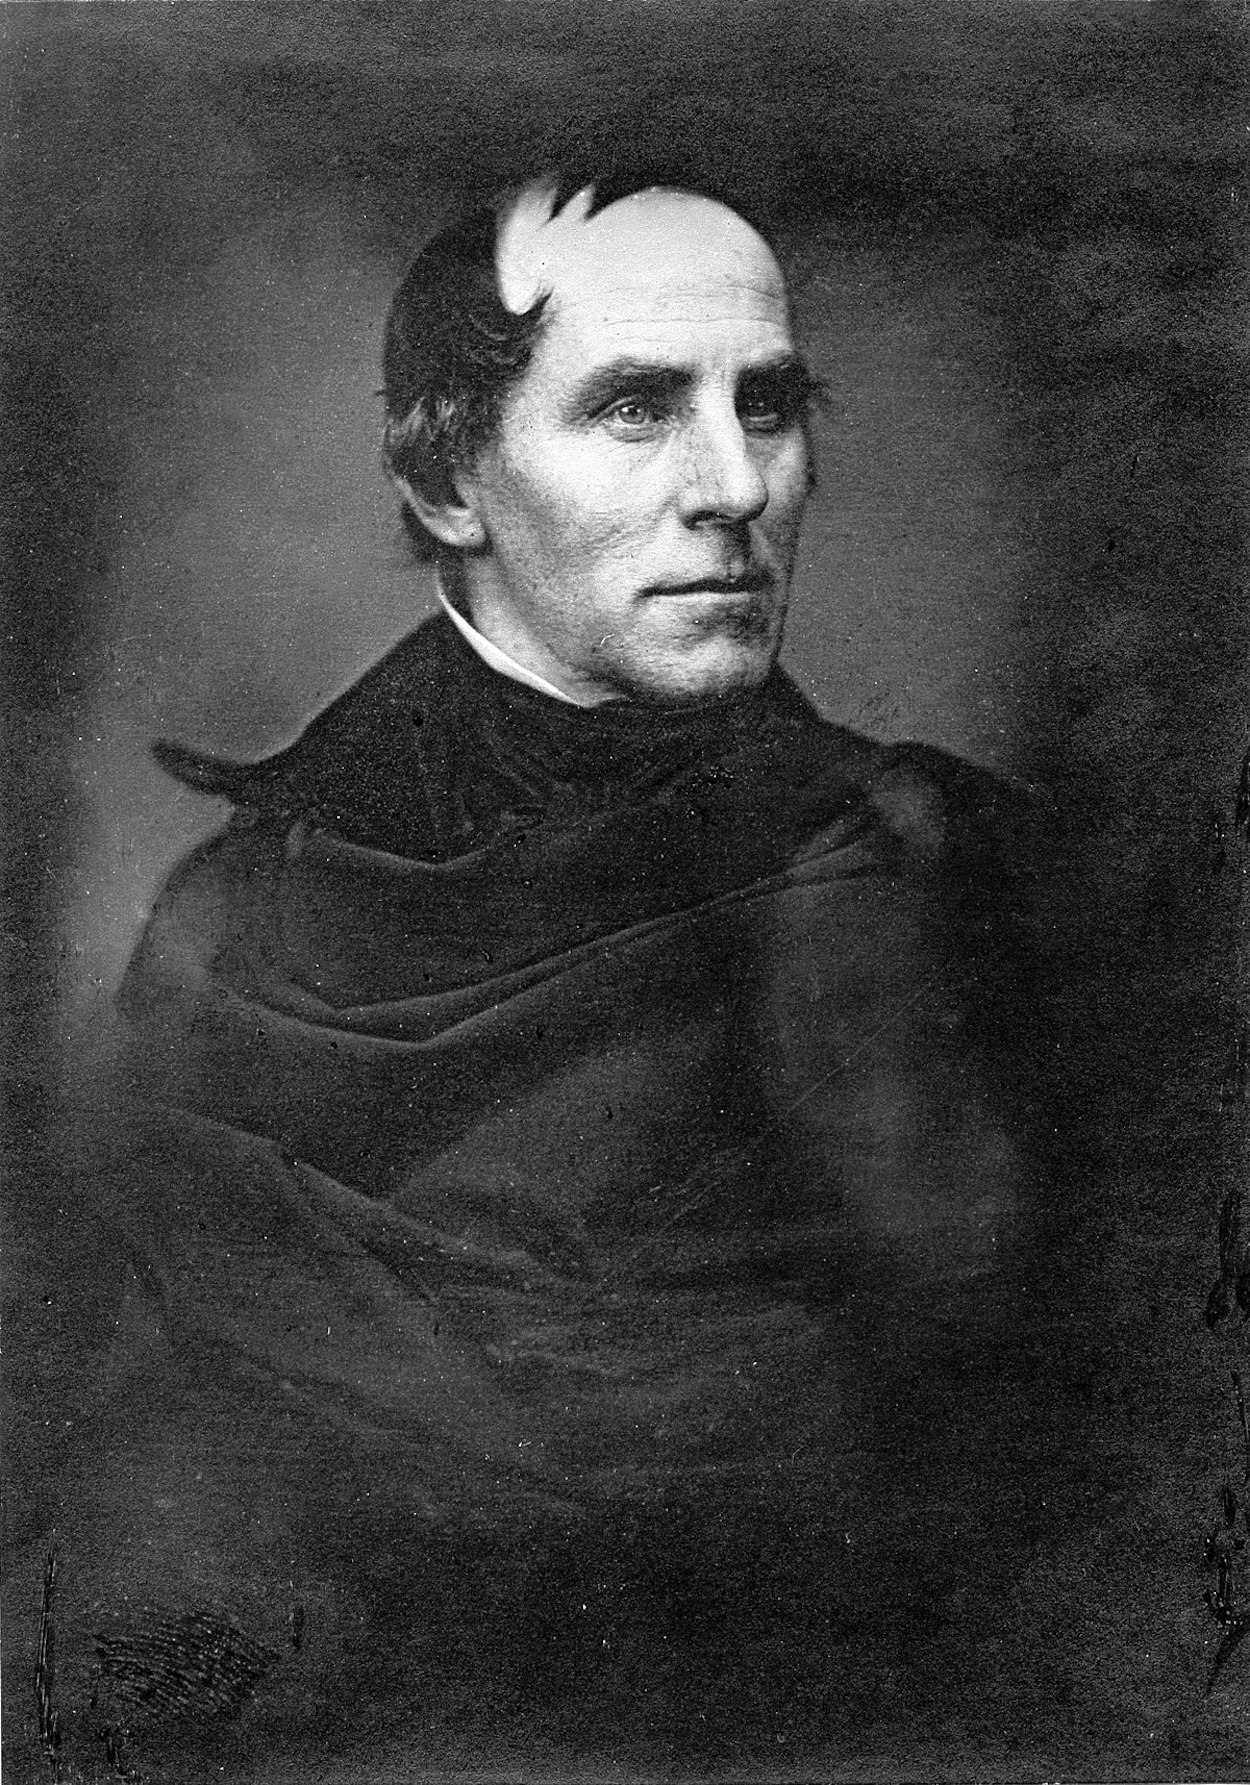 Thomas Cole - February 1, 1801 - February 11, 1848